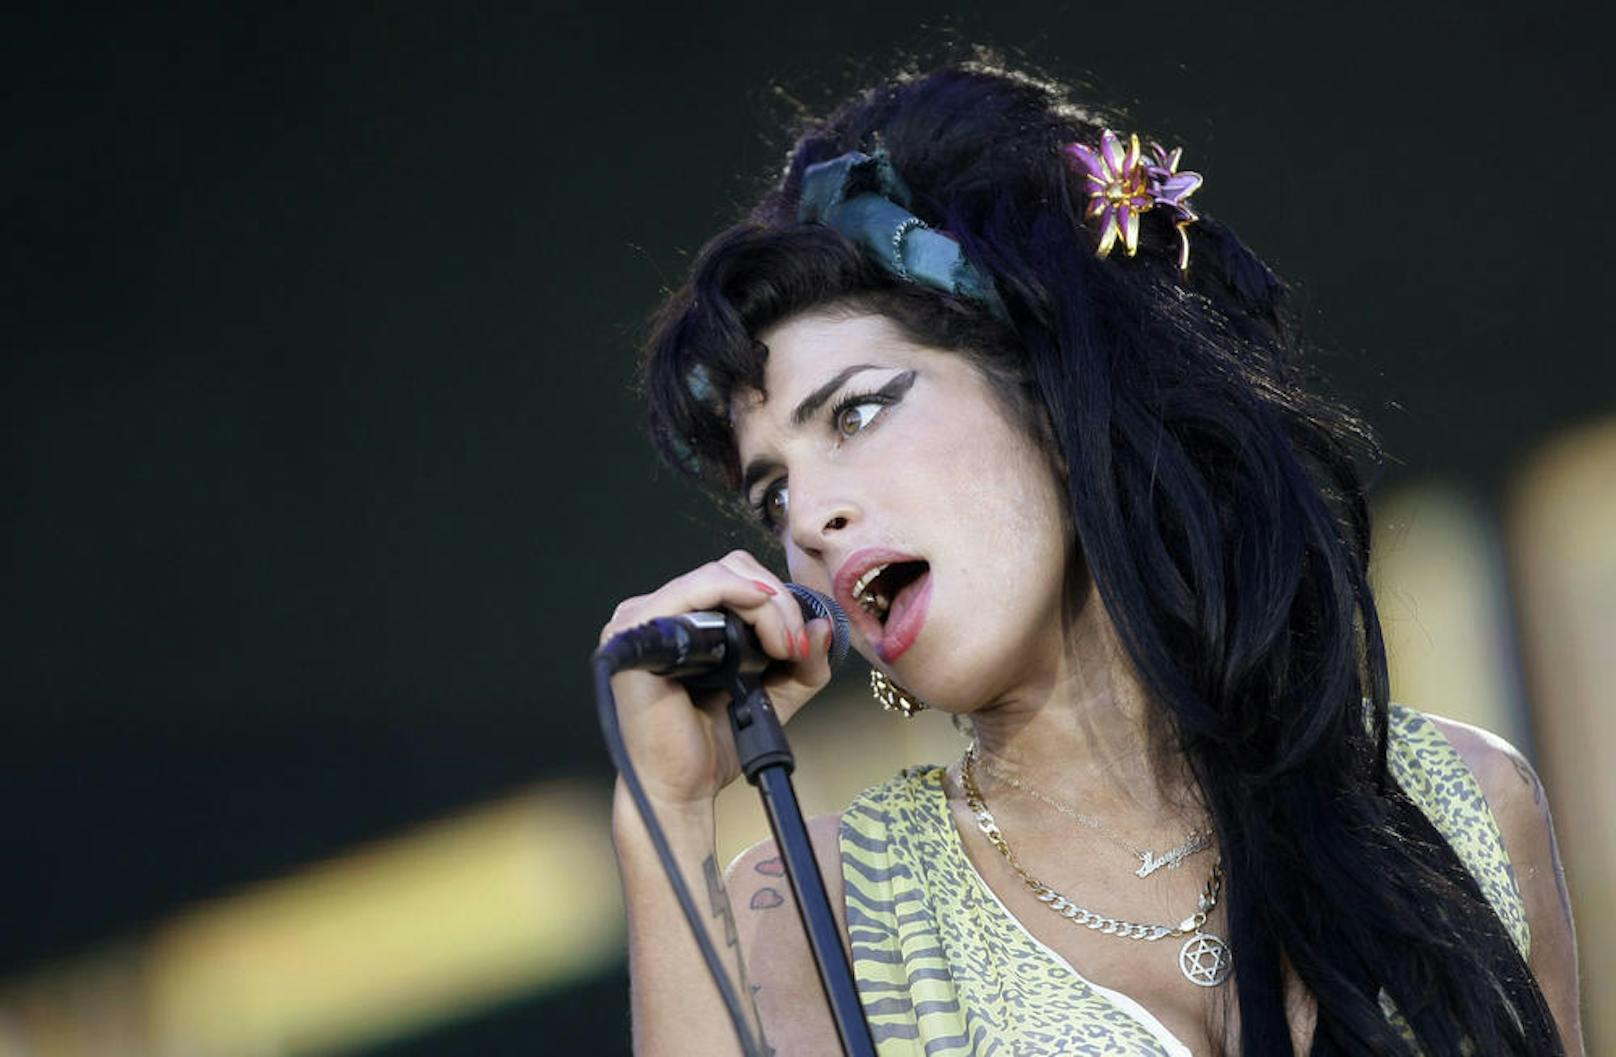 <b>Amy Winehouse</b> verstarb 2011 im Alter von 27 Jahren. Die Sängerin erlag einer Alkoholvergiftung: Sie hatte 4,16 Promille im Blut. Mit Alkohol und Drogen kämpfte Winehouse über mehrere Jahre. Ihr Ex-Mann Blake Fielder-Civil sagte in der britischen "Jeremy Kyle Show", er habe sie an harte Drogen herangeführt: "Es ist meine Schuld, dass Amy Heroin konsumiert hat."